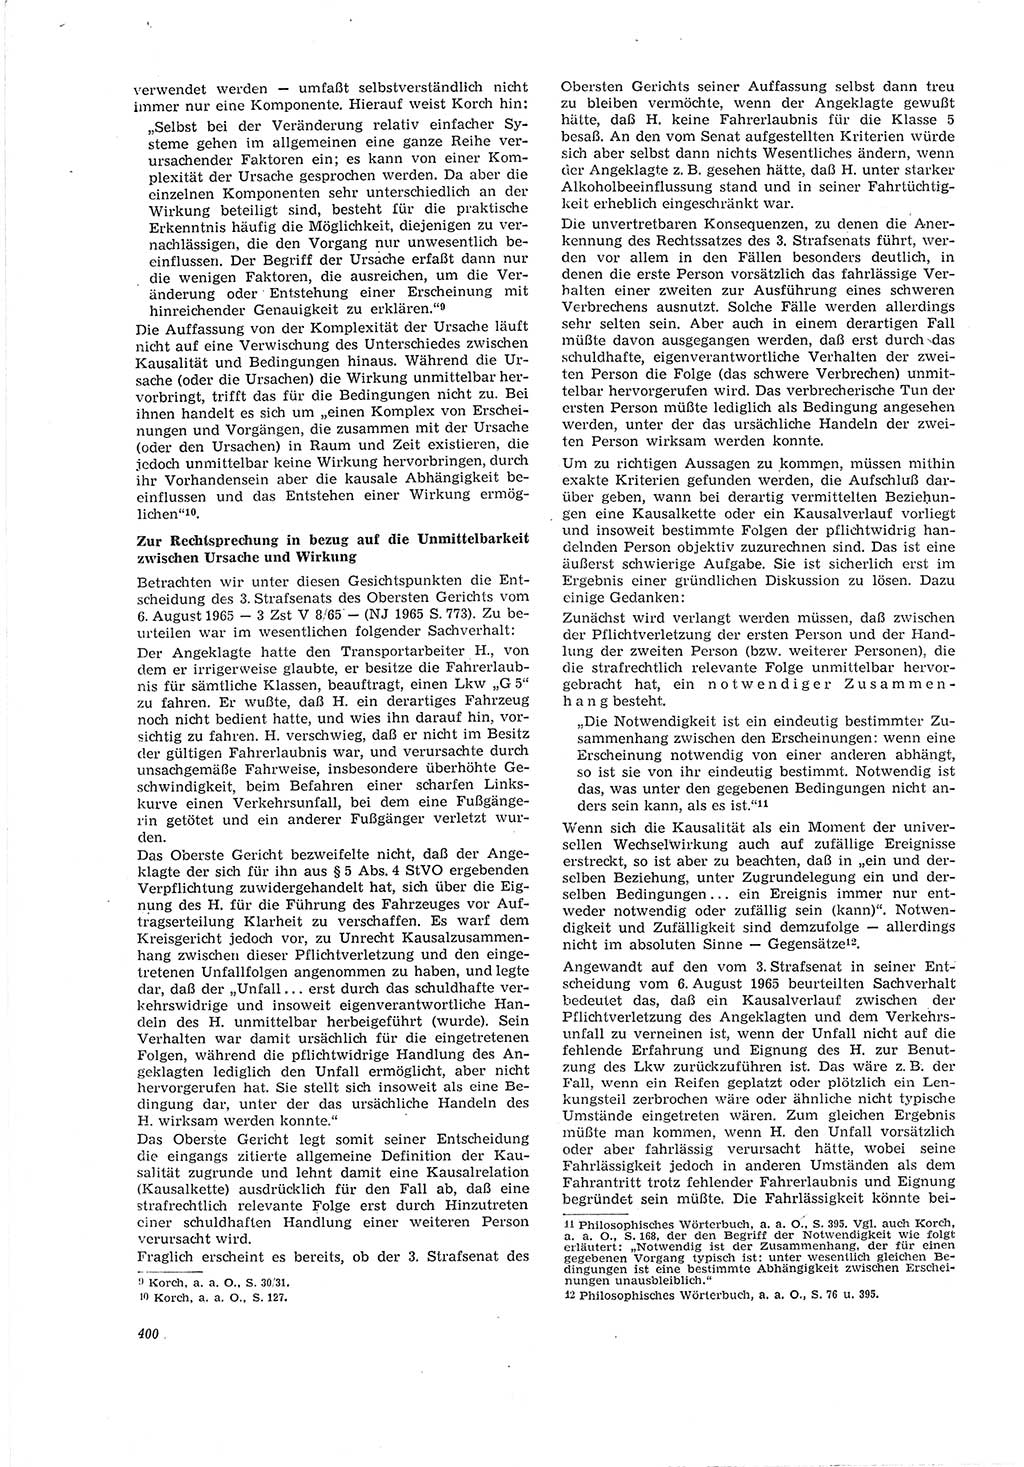 Neue Justiz (NJ), Zeitschrift für Recht und Rechtswissenschaft [Deutsche Demokratische Republik (DDR)], 20. Jahrgang 1966, Seite 400 (NJ DDR 1966, S. 400)